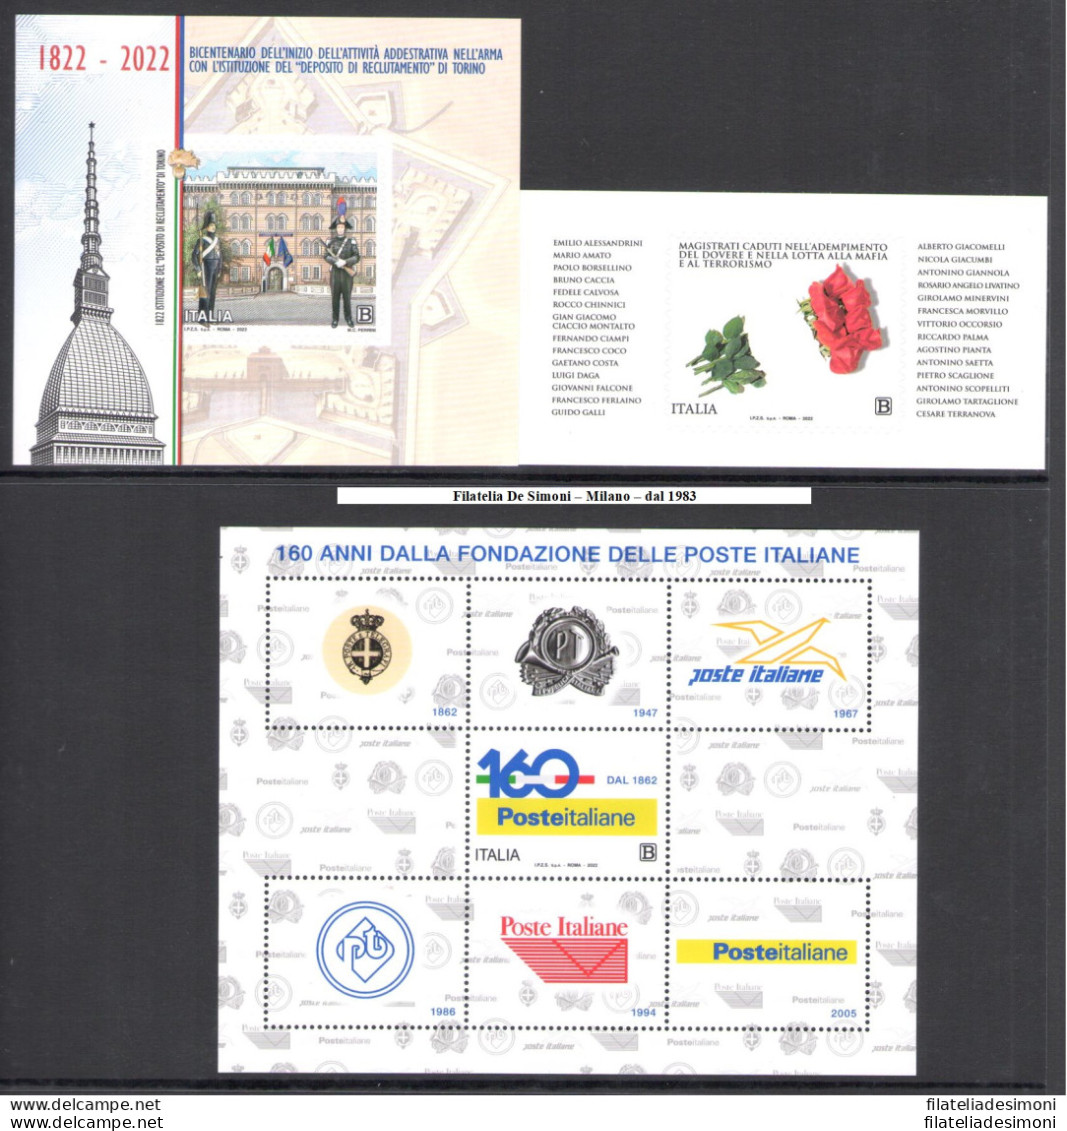 2022 Italia Repubblica, Annata completa, francobolli nuovi, 90 valori + 4 Foglietti + 2 Minifogli (Milan - Don Orione) -